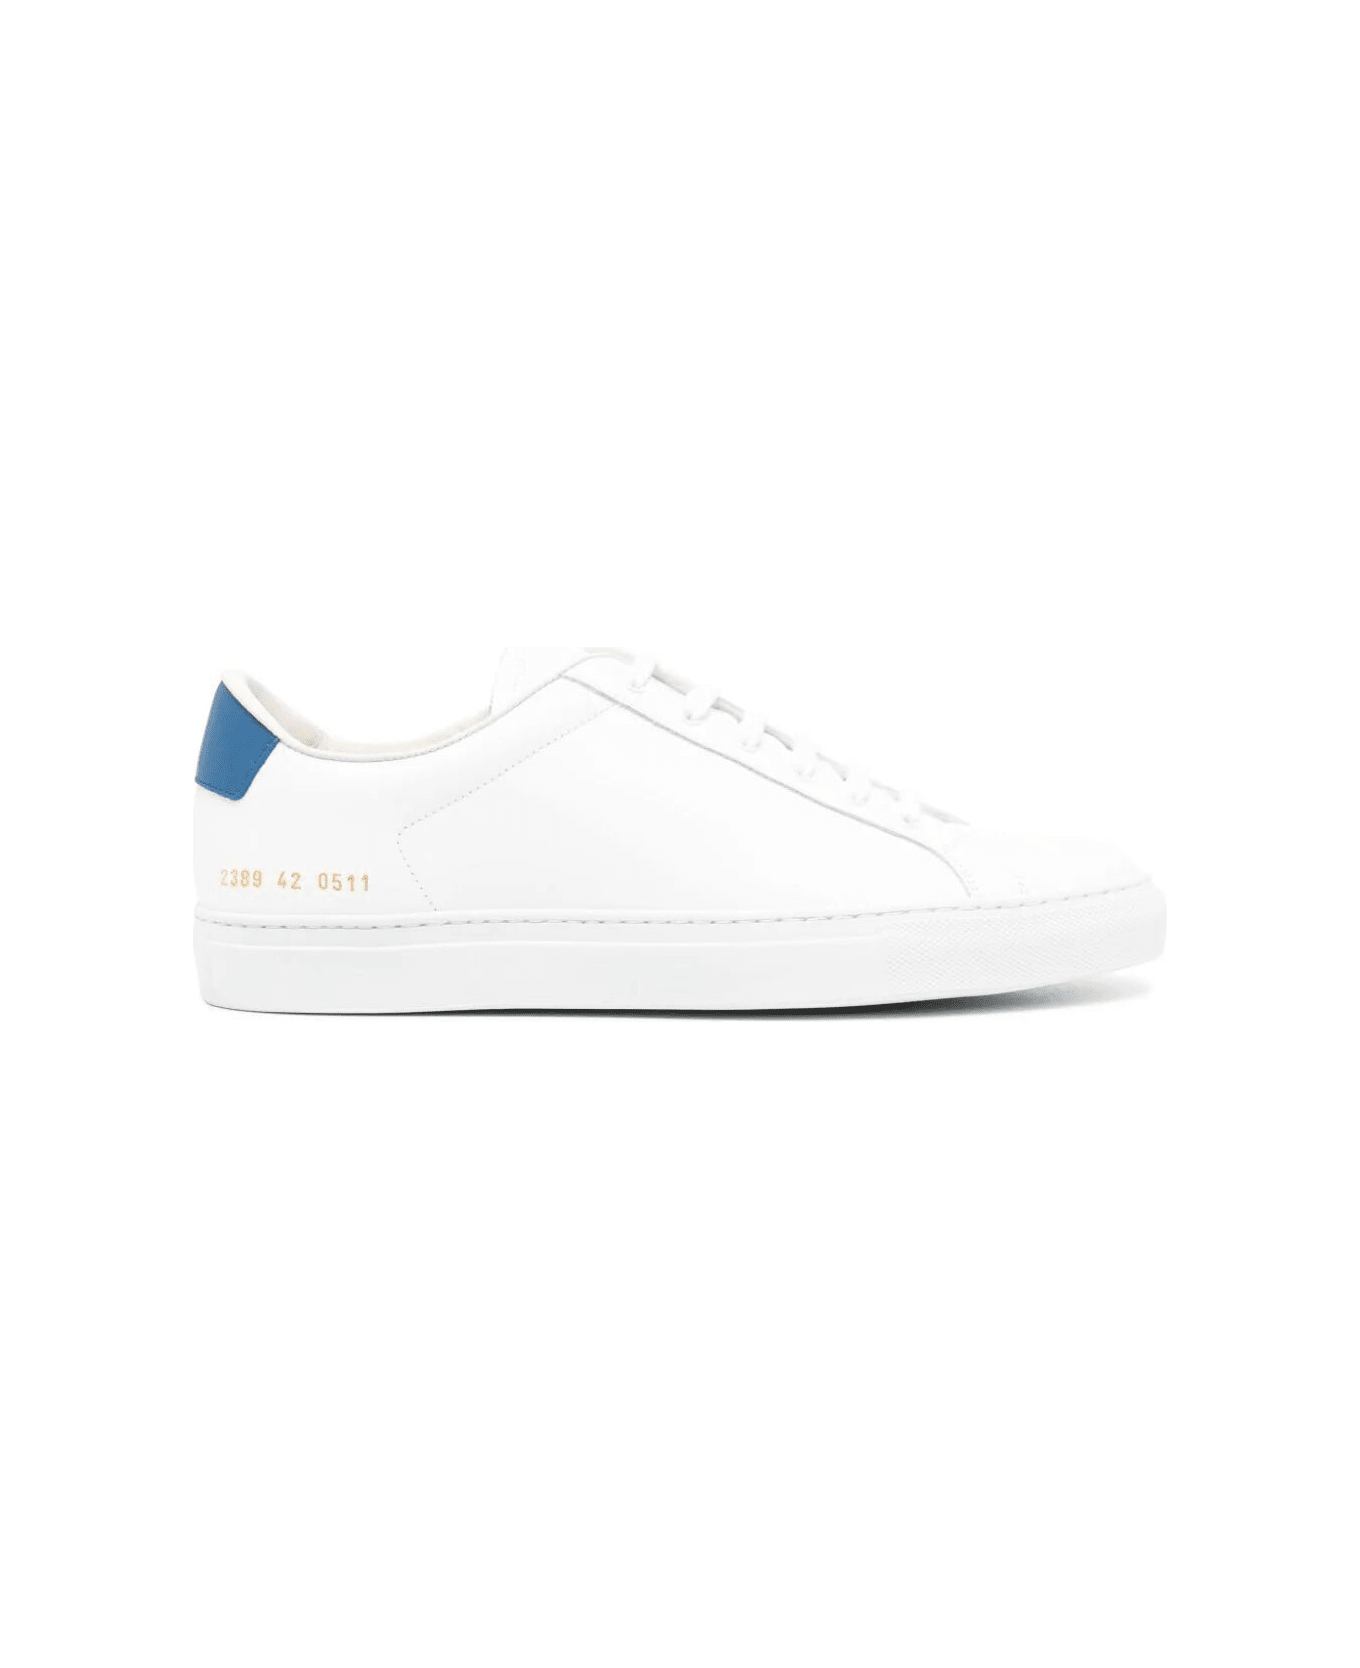 Common Projects Retro Classic Sneaker - White Blue